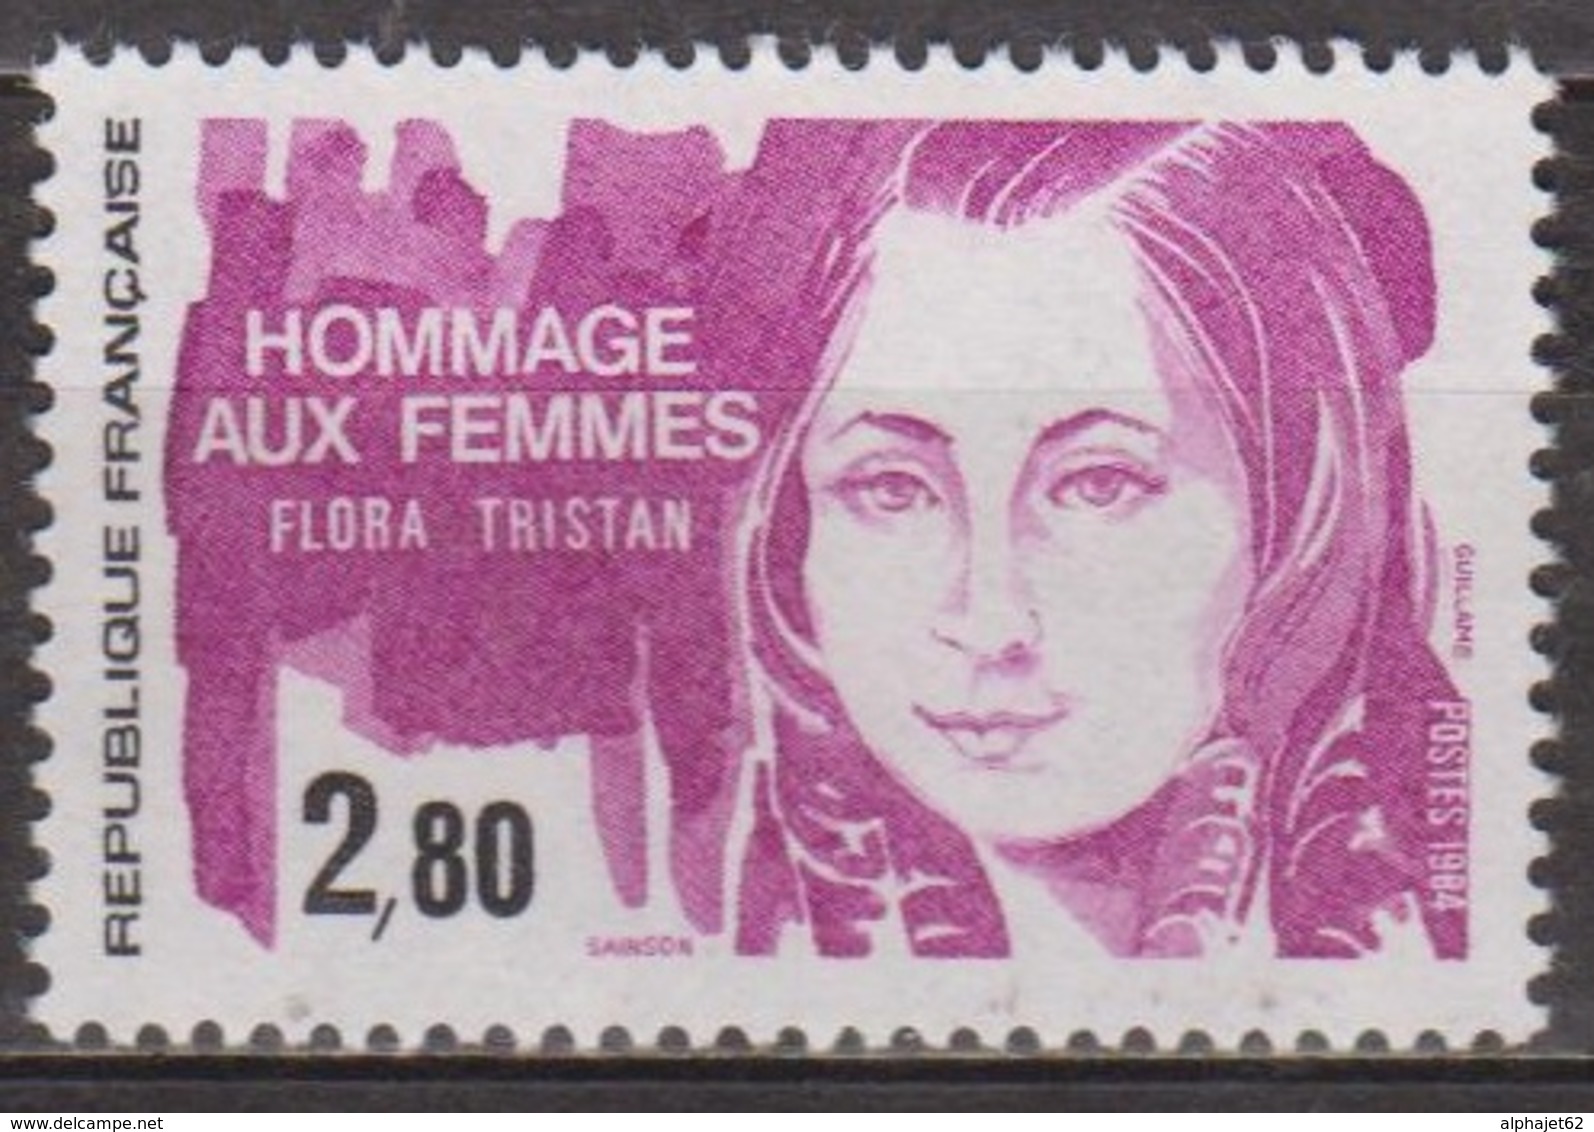 Hommage Aux Femmes - FRANCE - Flora Tristan, Femme De Lettres, Féministe - N° 2303 **  - 1984 - Nuevos